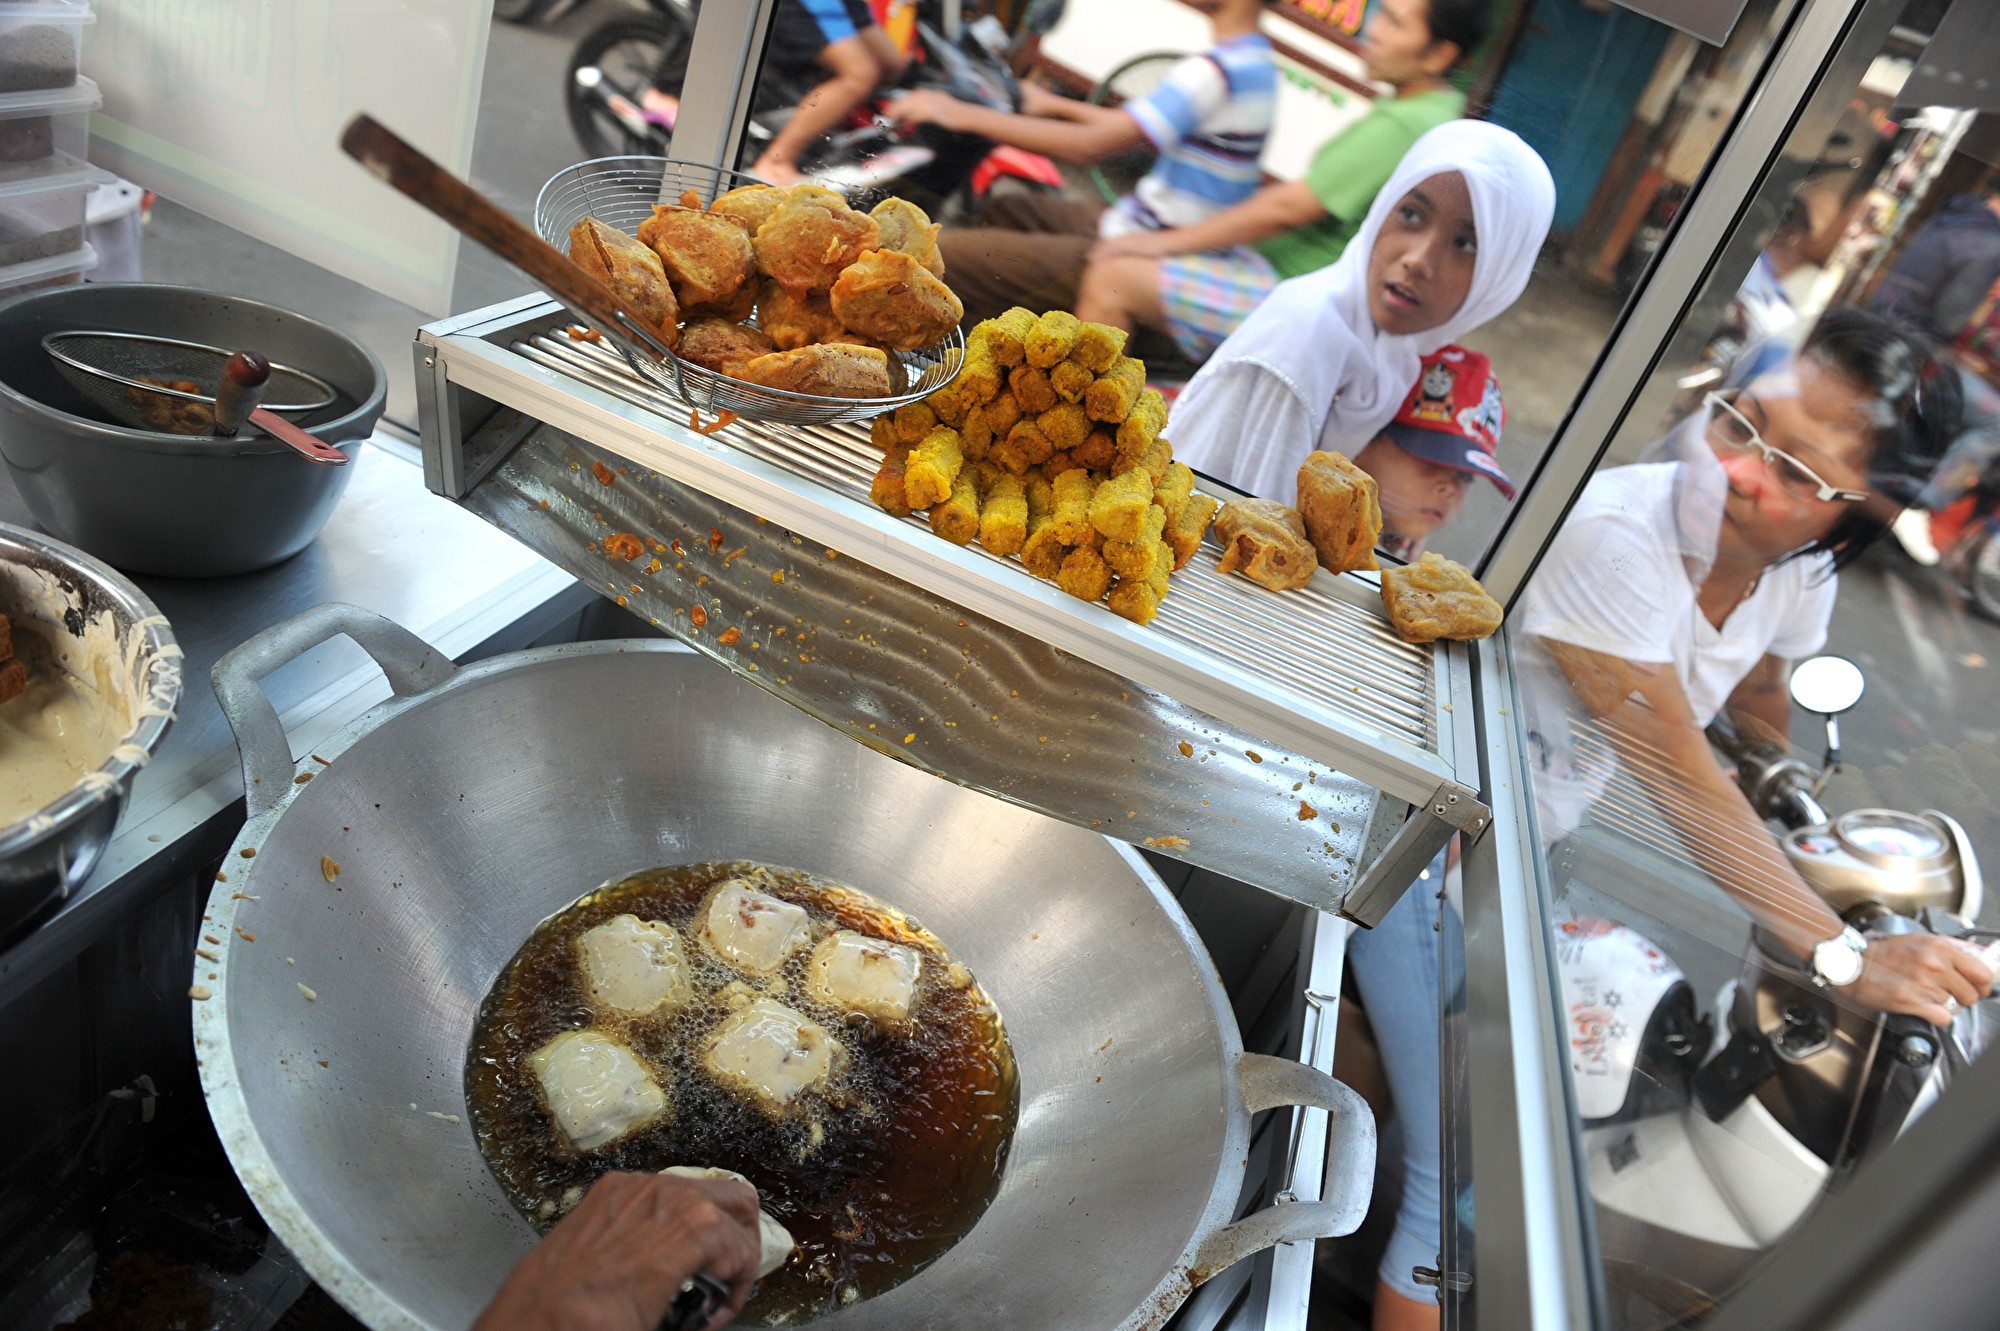 Trong ẩm thực Indonesia, ảnh hưởng của ẩm thực Trung Quốc là rõ ràng dễ thấy. Ảnh chụp đầu bếp đang chiên đậu phụ tại một nhà hàng địa phương nhỏ ở Jakarta, thủ đô của Indonesia. Đậu phụ trong tiếng Indonesia được gọi là “tahu”. (Ảnh: Getty Images)